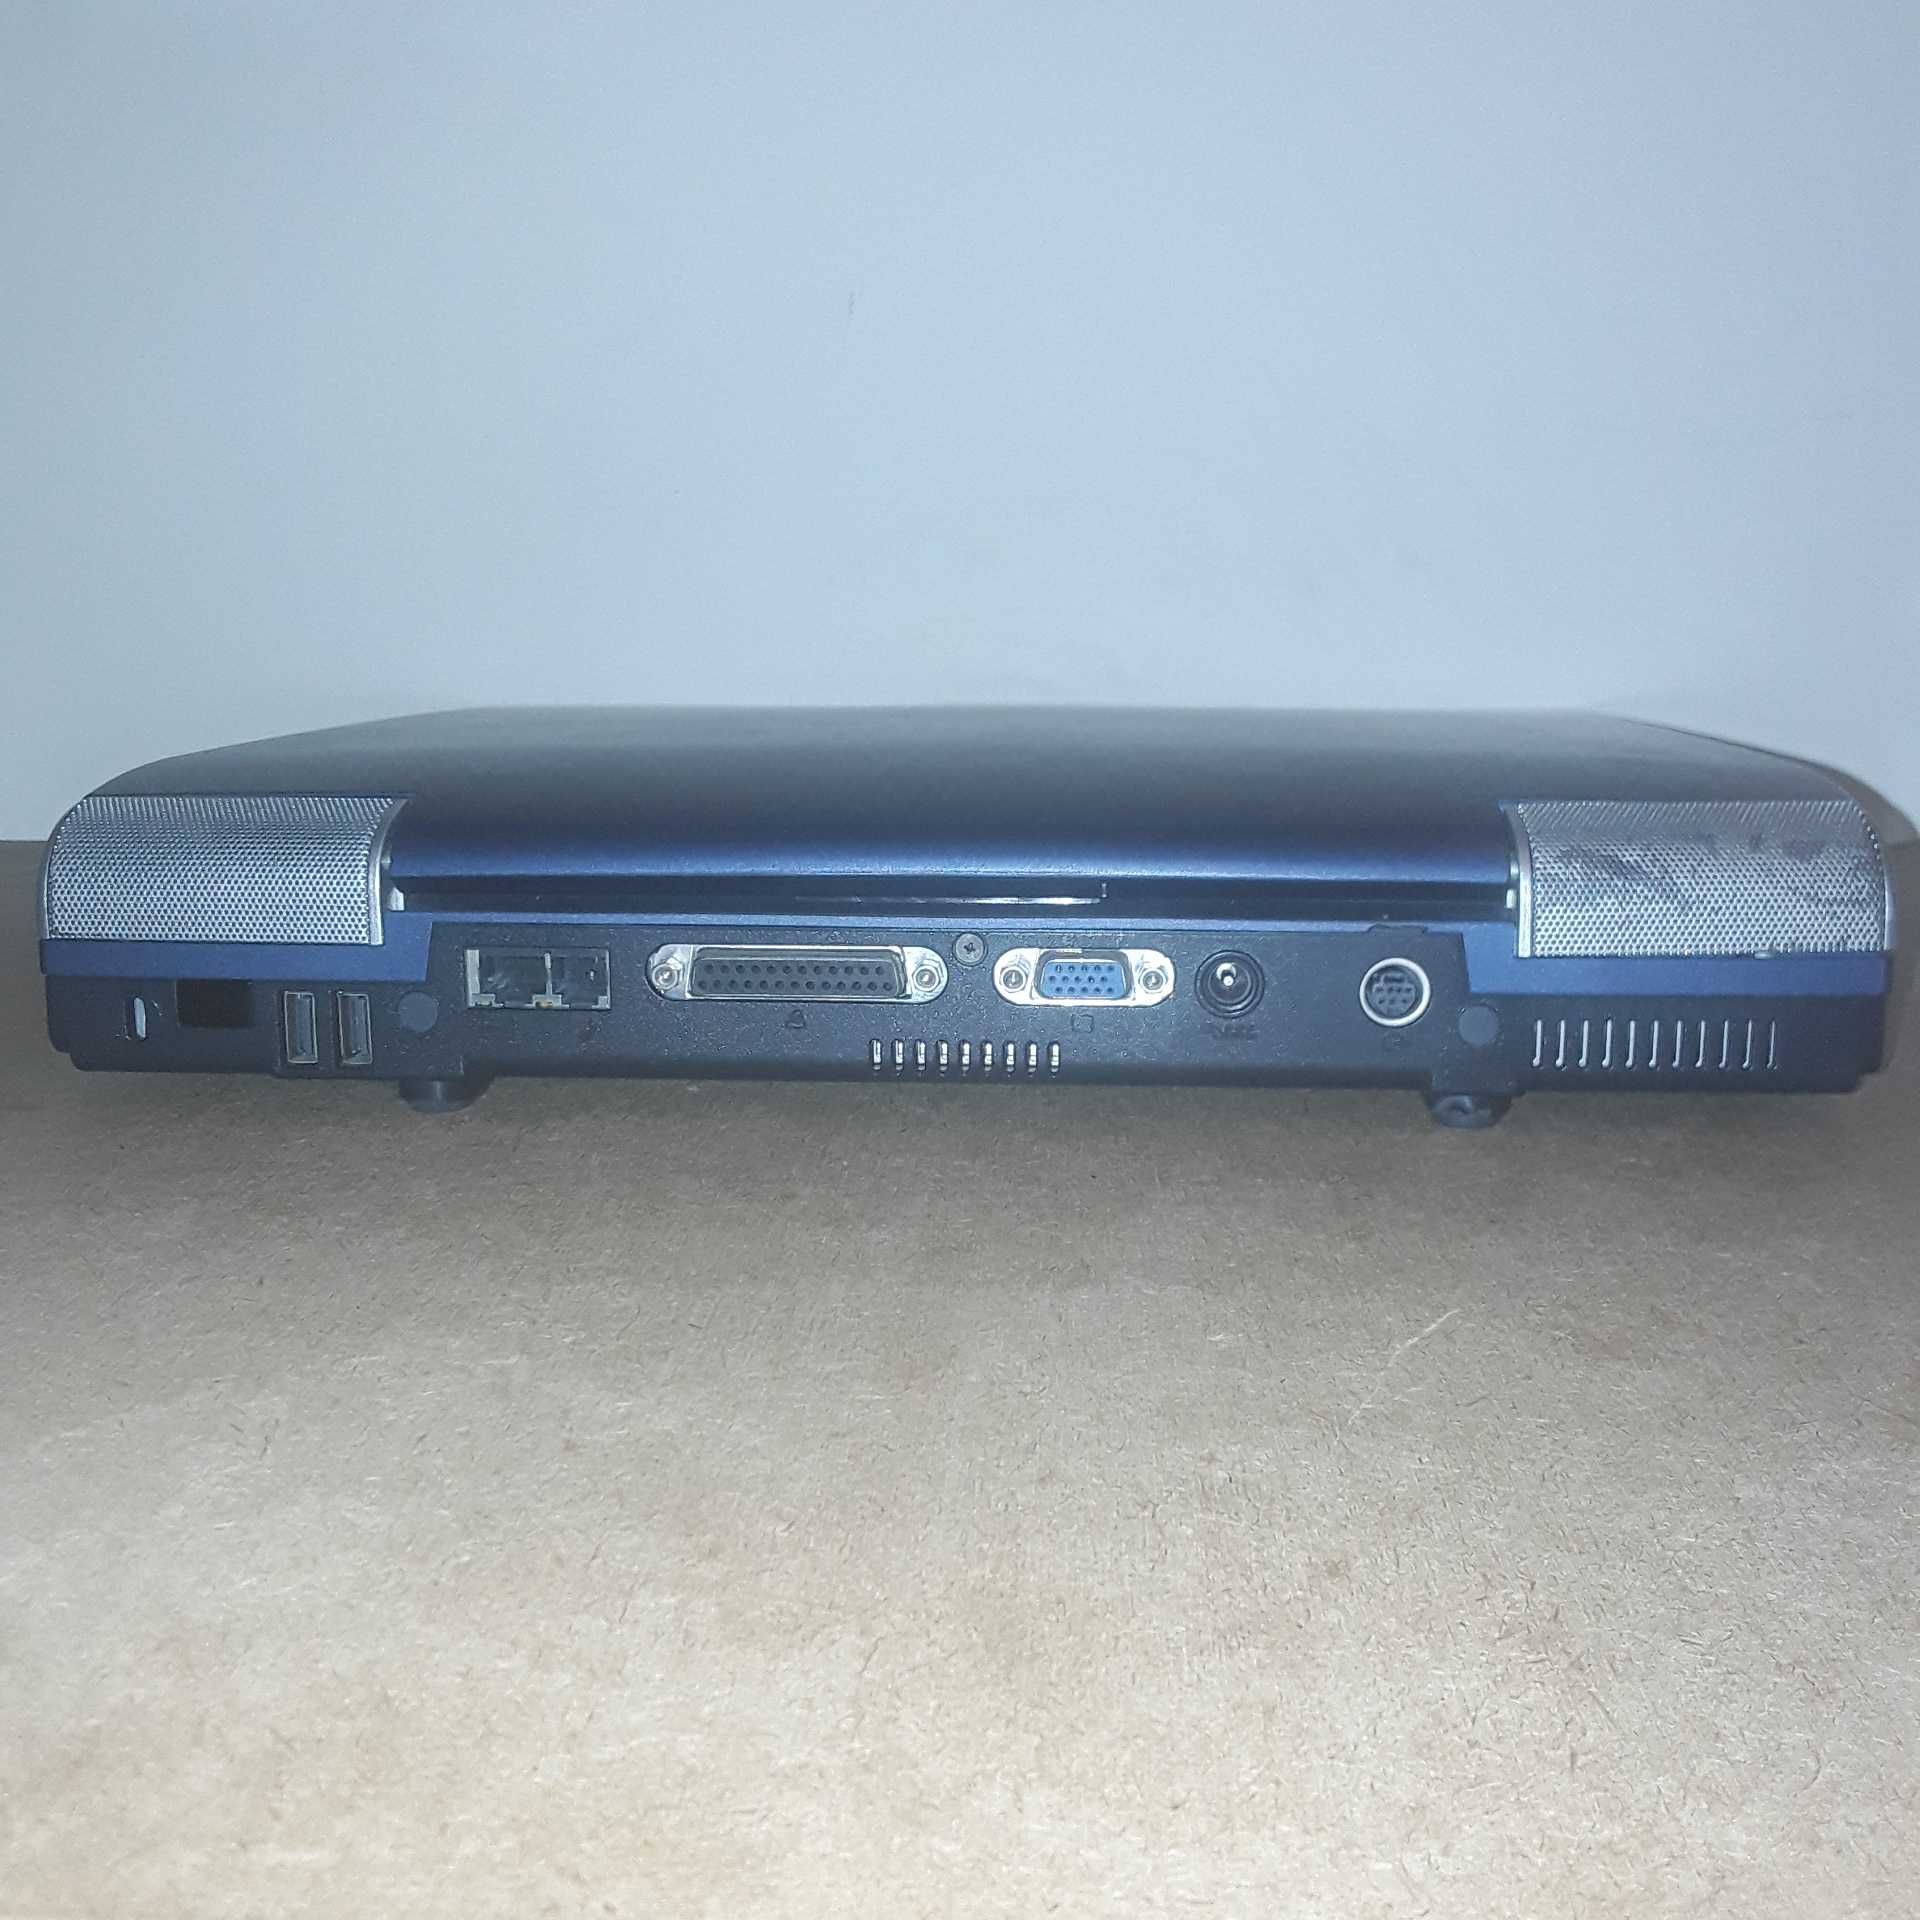 Portátil Toshiba Satellite S1900 modelo 102 [Sem disco rígido]